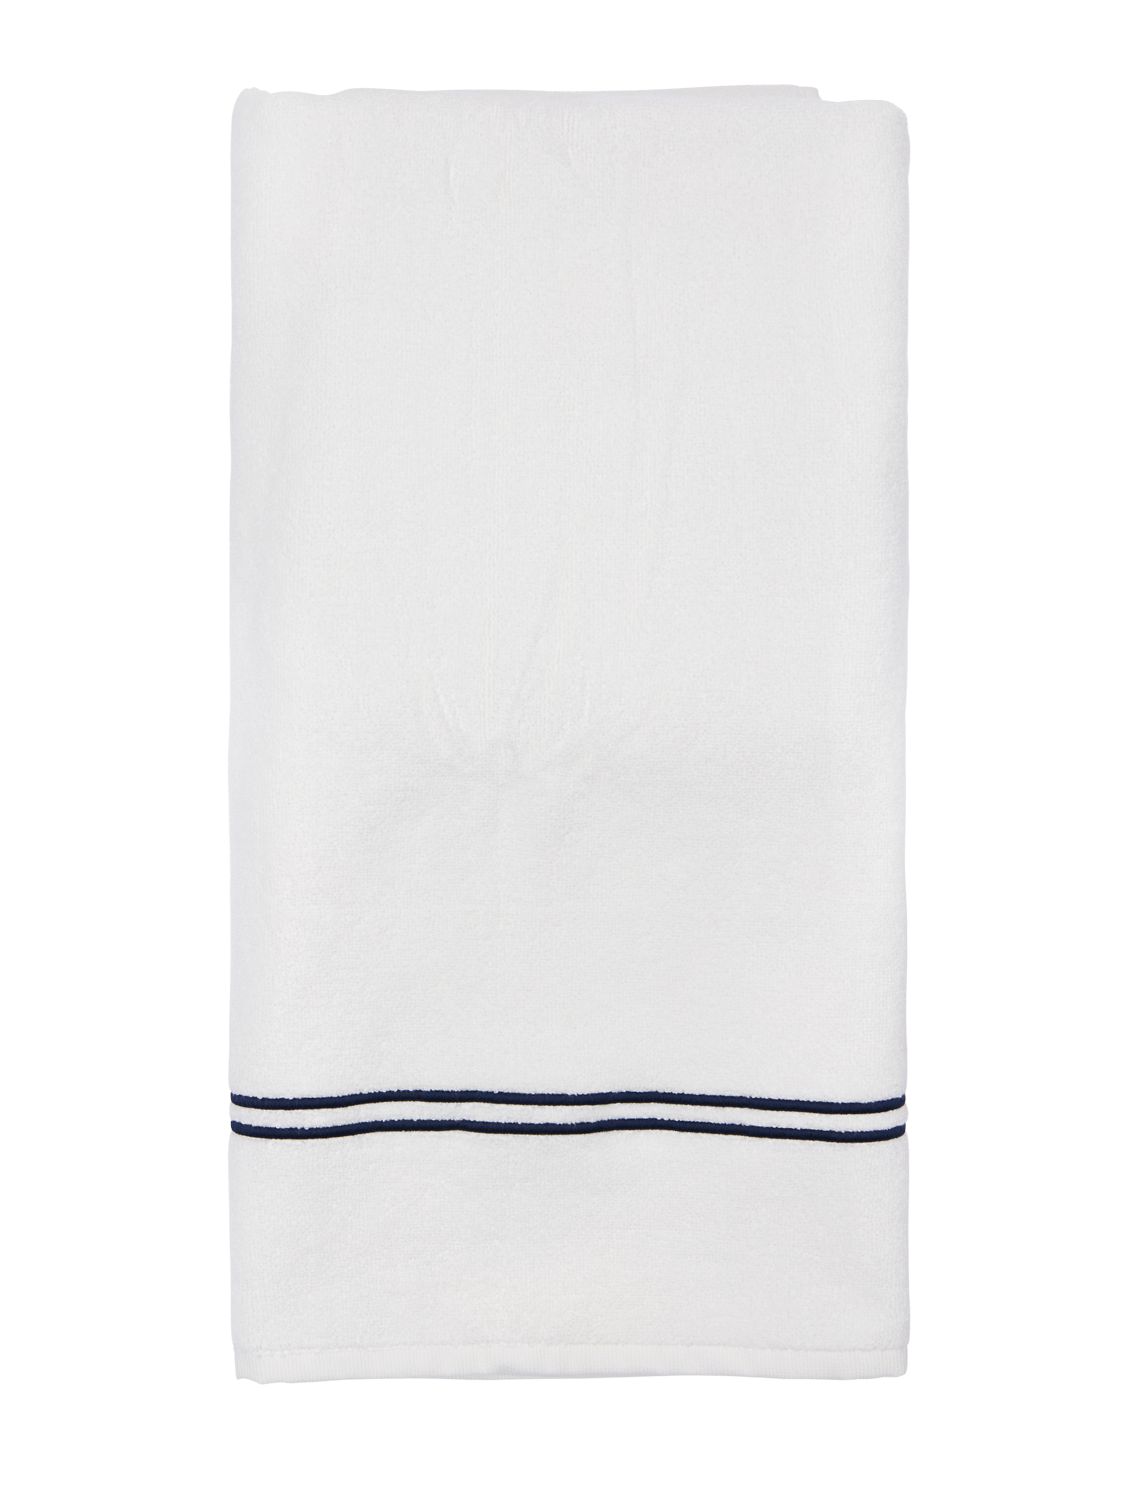 Frette Hotel Classic浴巾 In White,blue